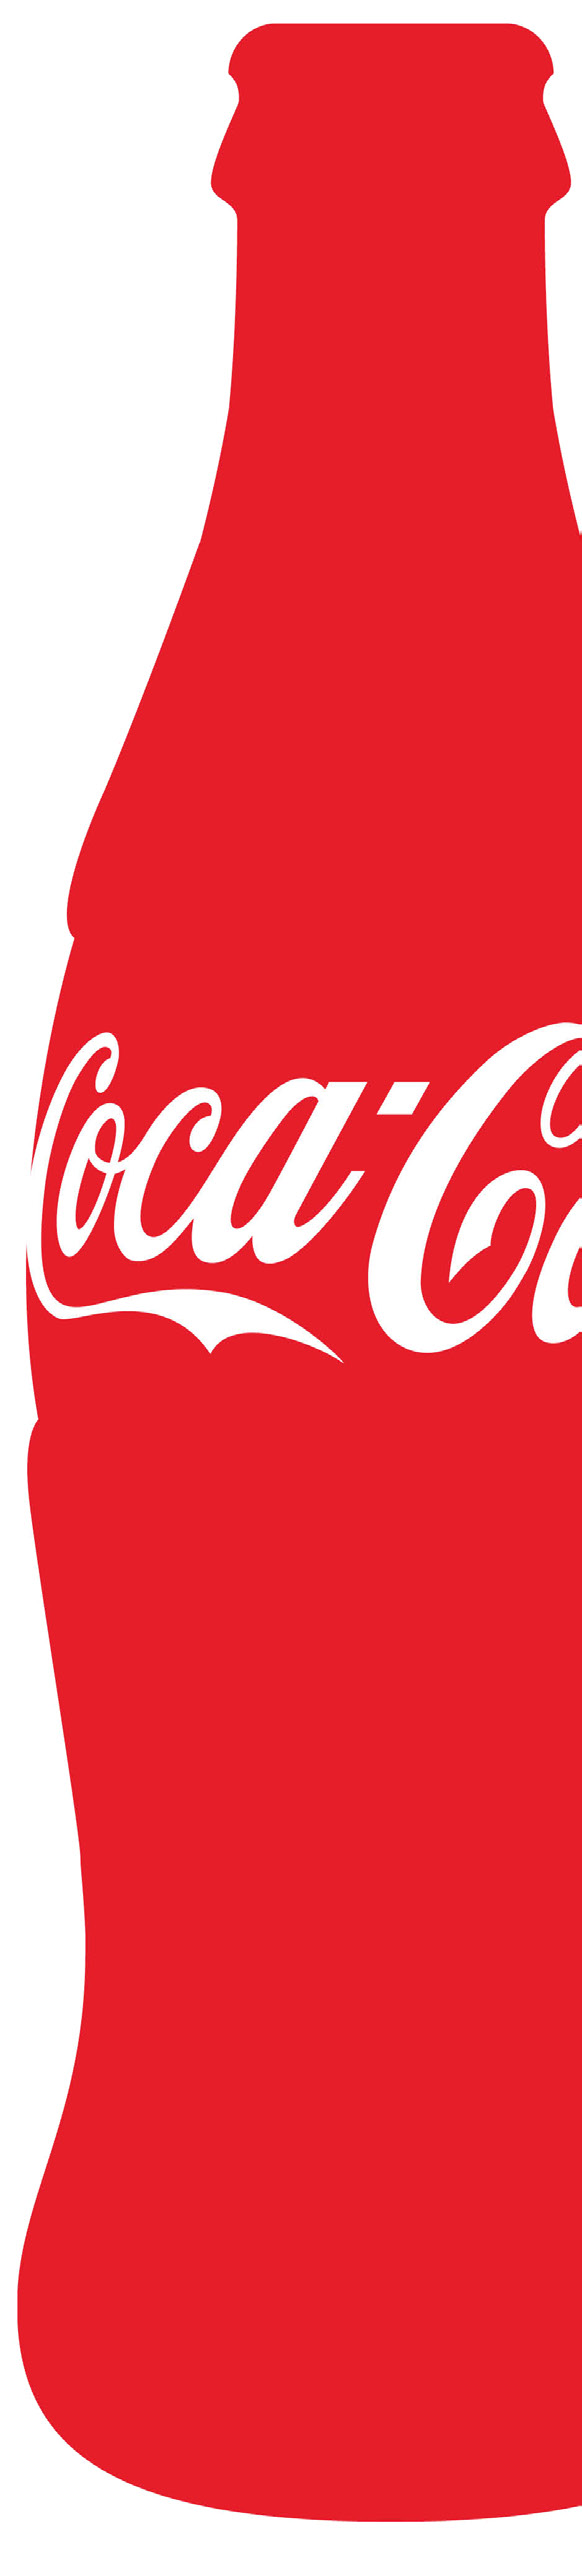 Industria alimentare Coca-Cola Germany Massima trasparenza: monitoraggio centrale